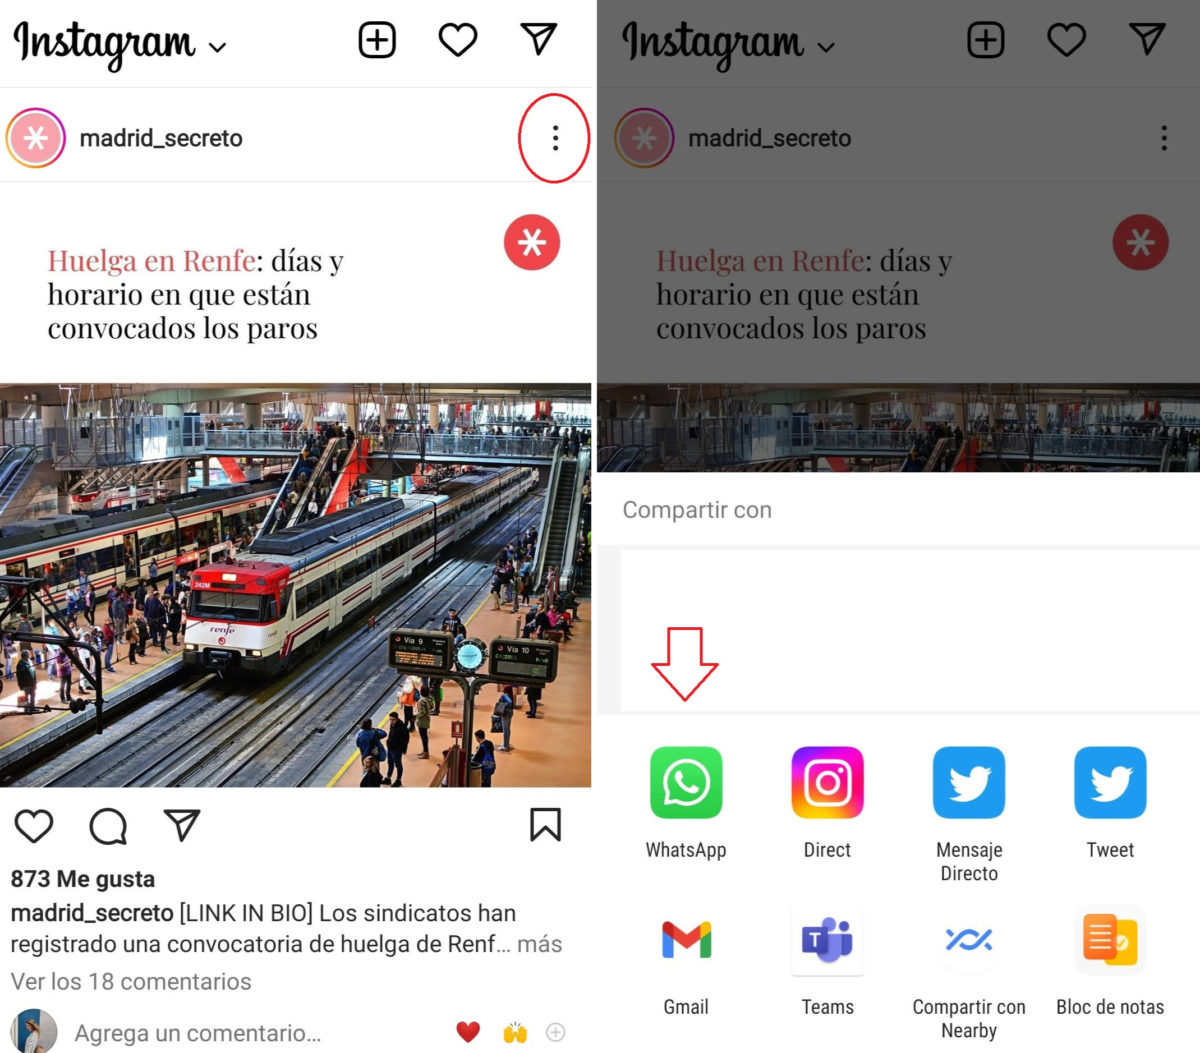 Cómo compartir publicaciones de Instagram por WhatsApp